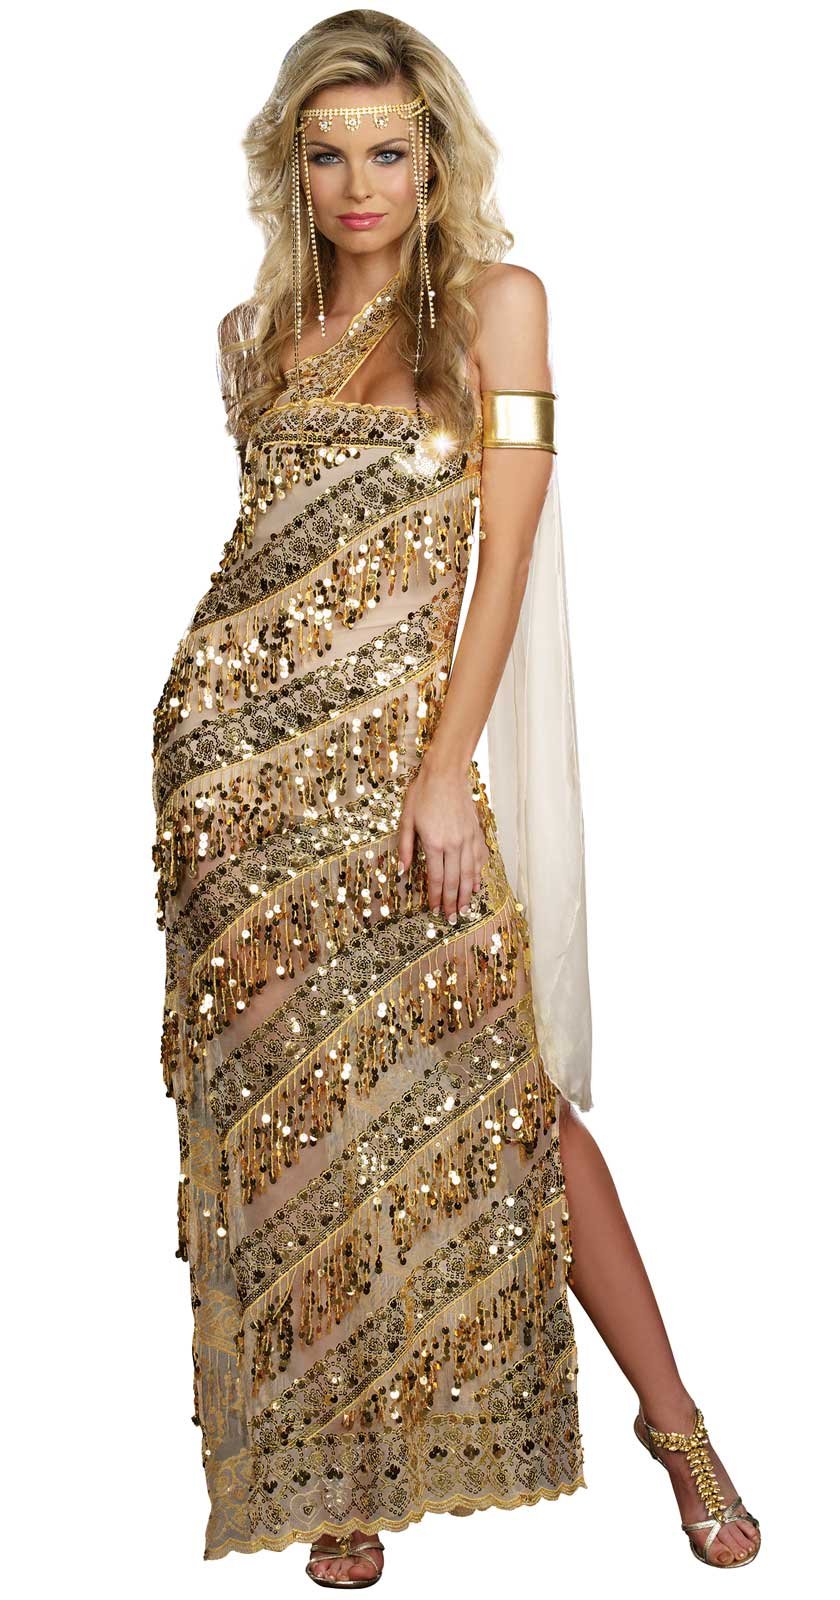 Golden Goddess Adult Costume